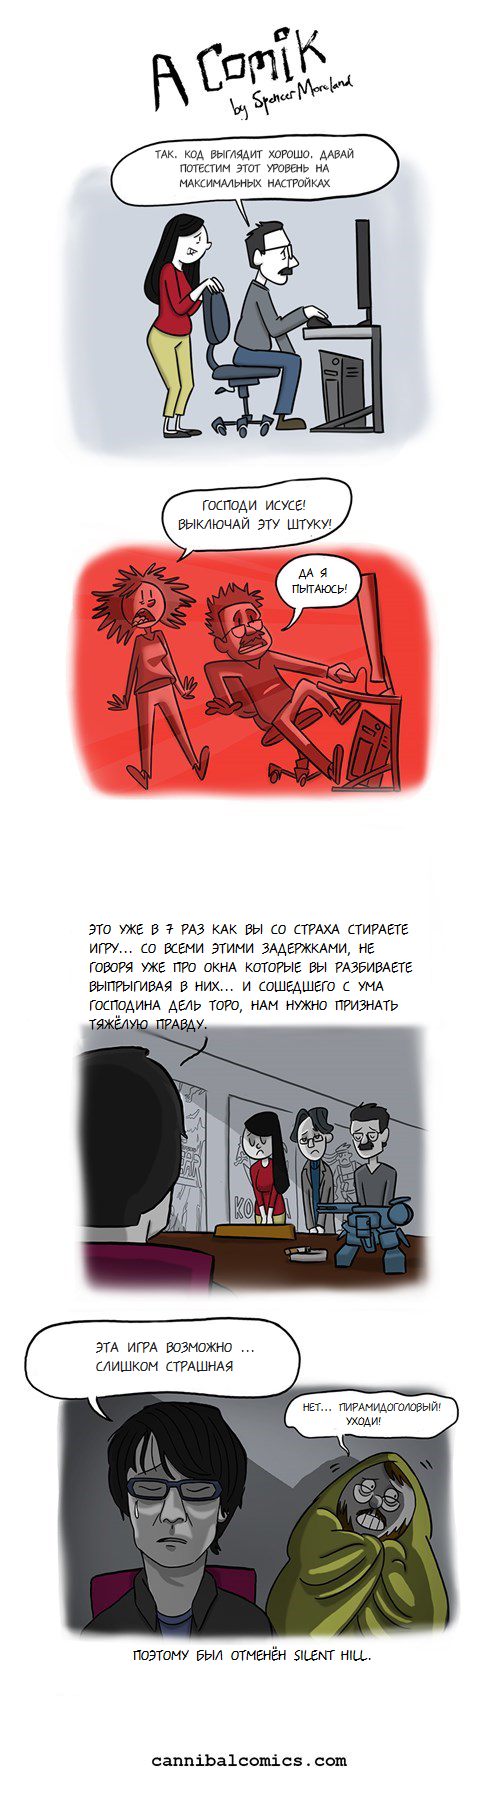 Подборка забавных комиксов 02.05.2015 (17 картинок)